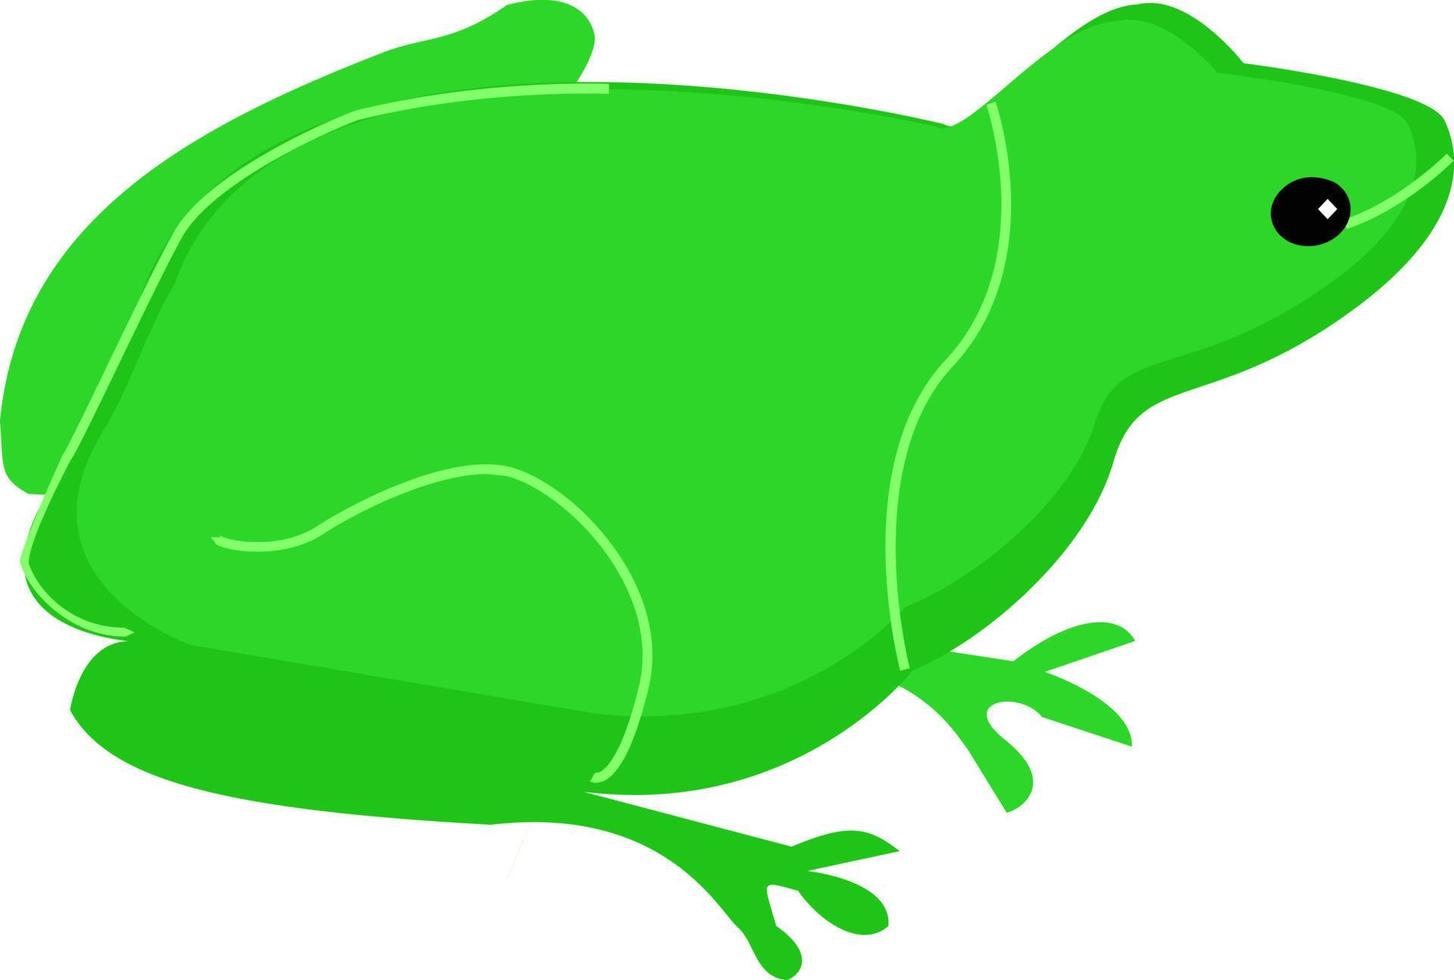 rana verde, ilustración, vector sobre fondo blanco.